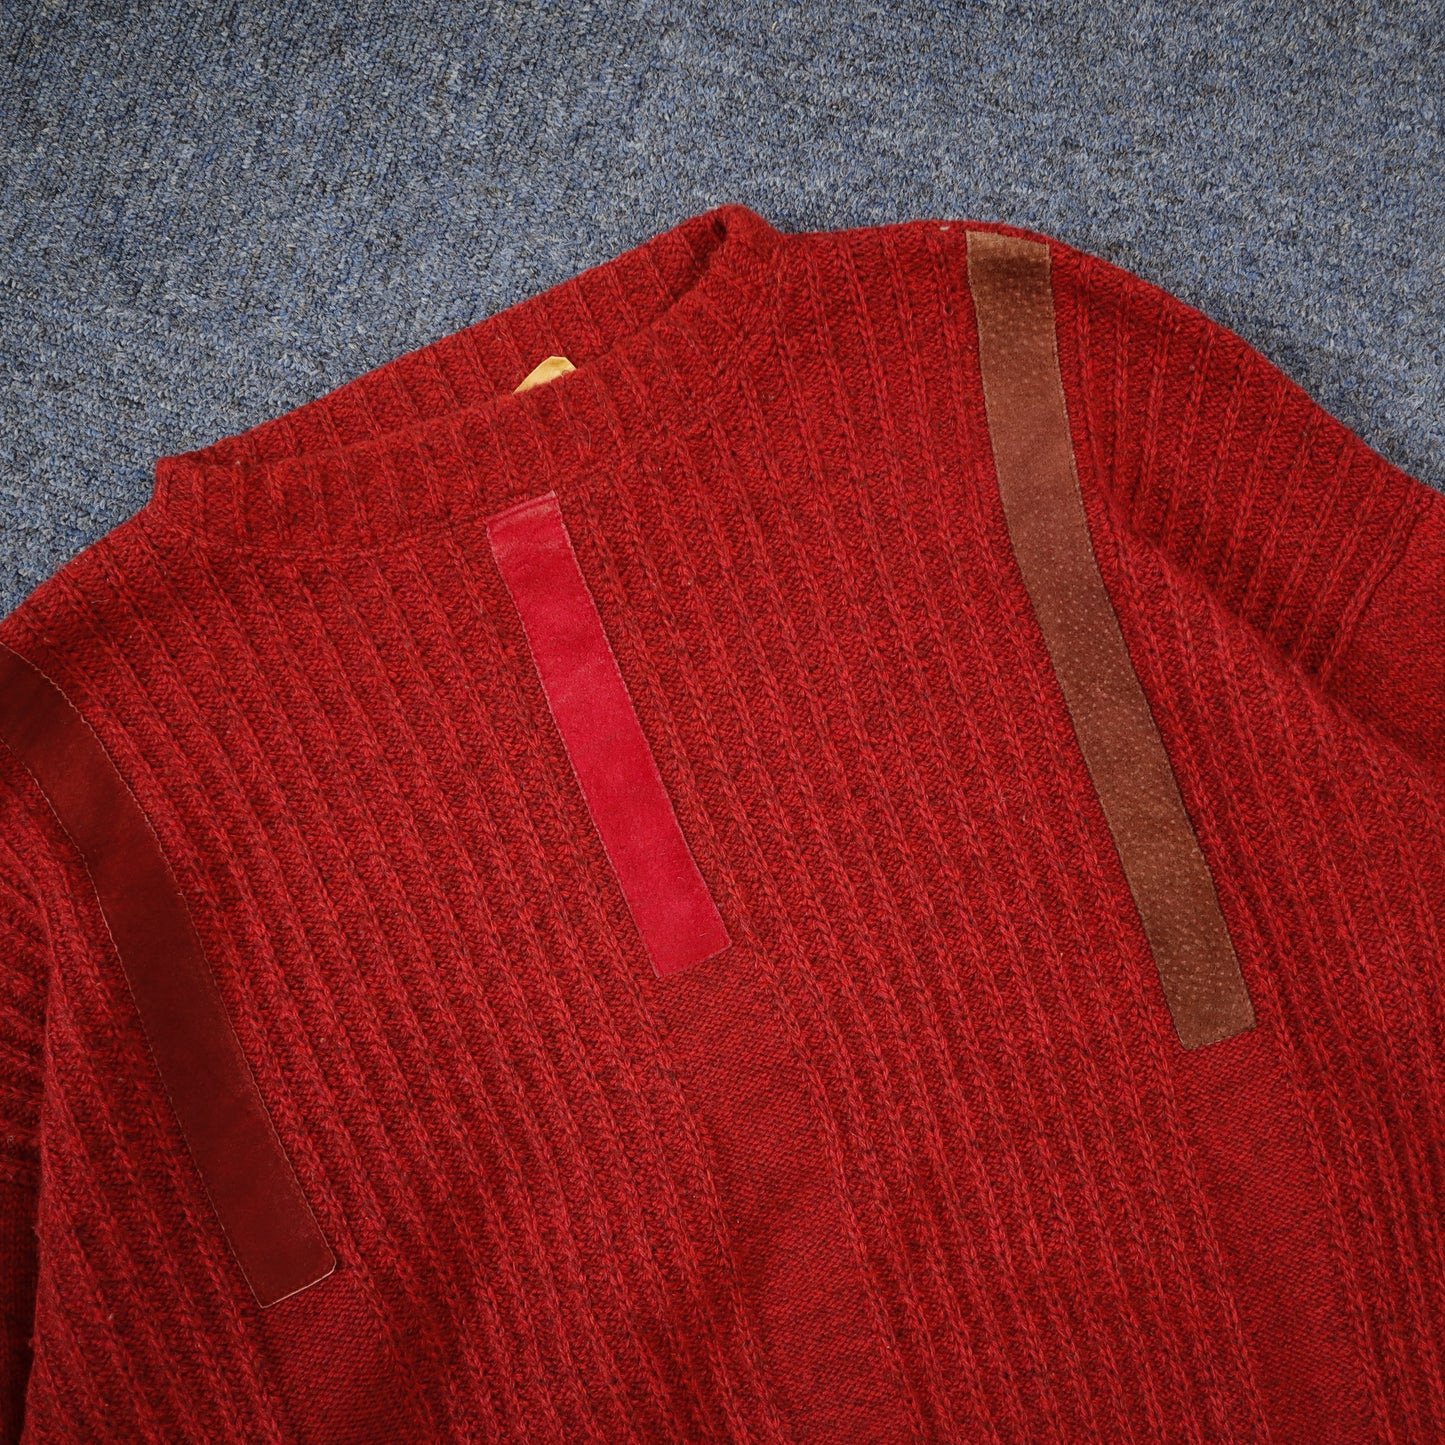 Heavyweight Knit Sweater